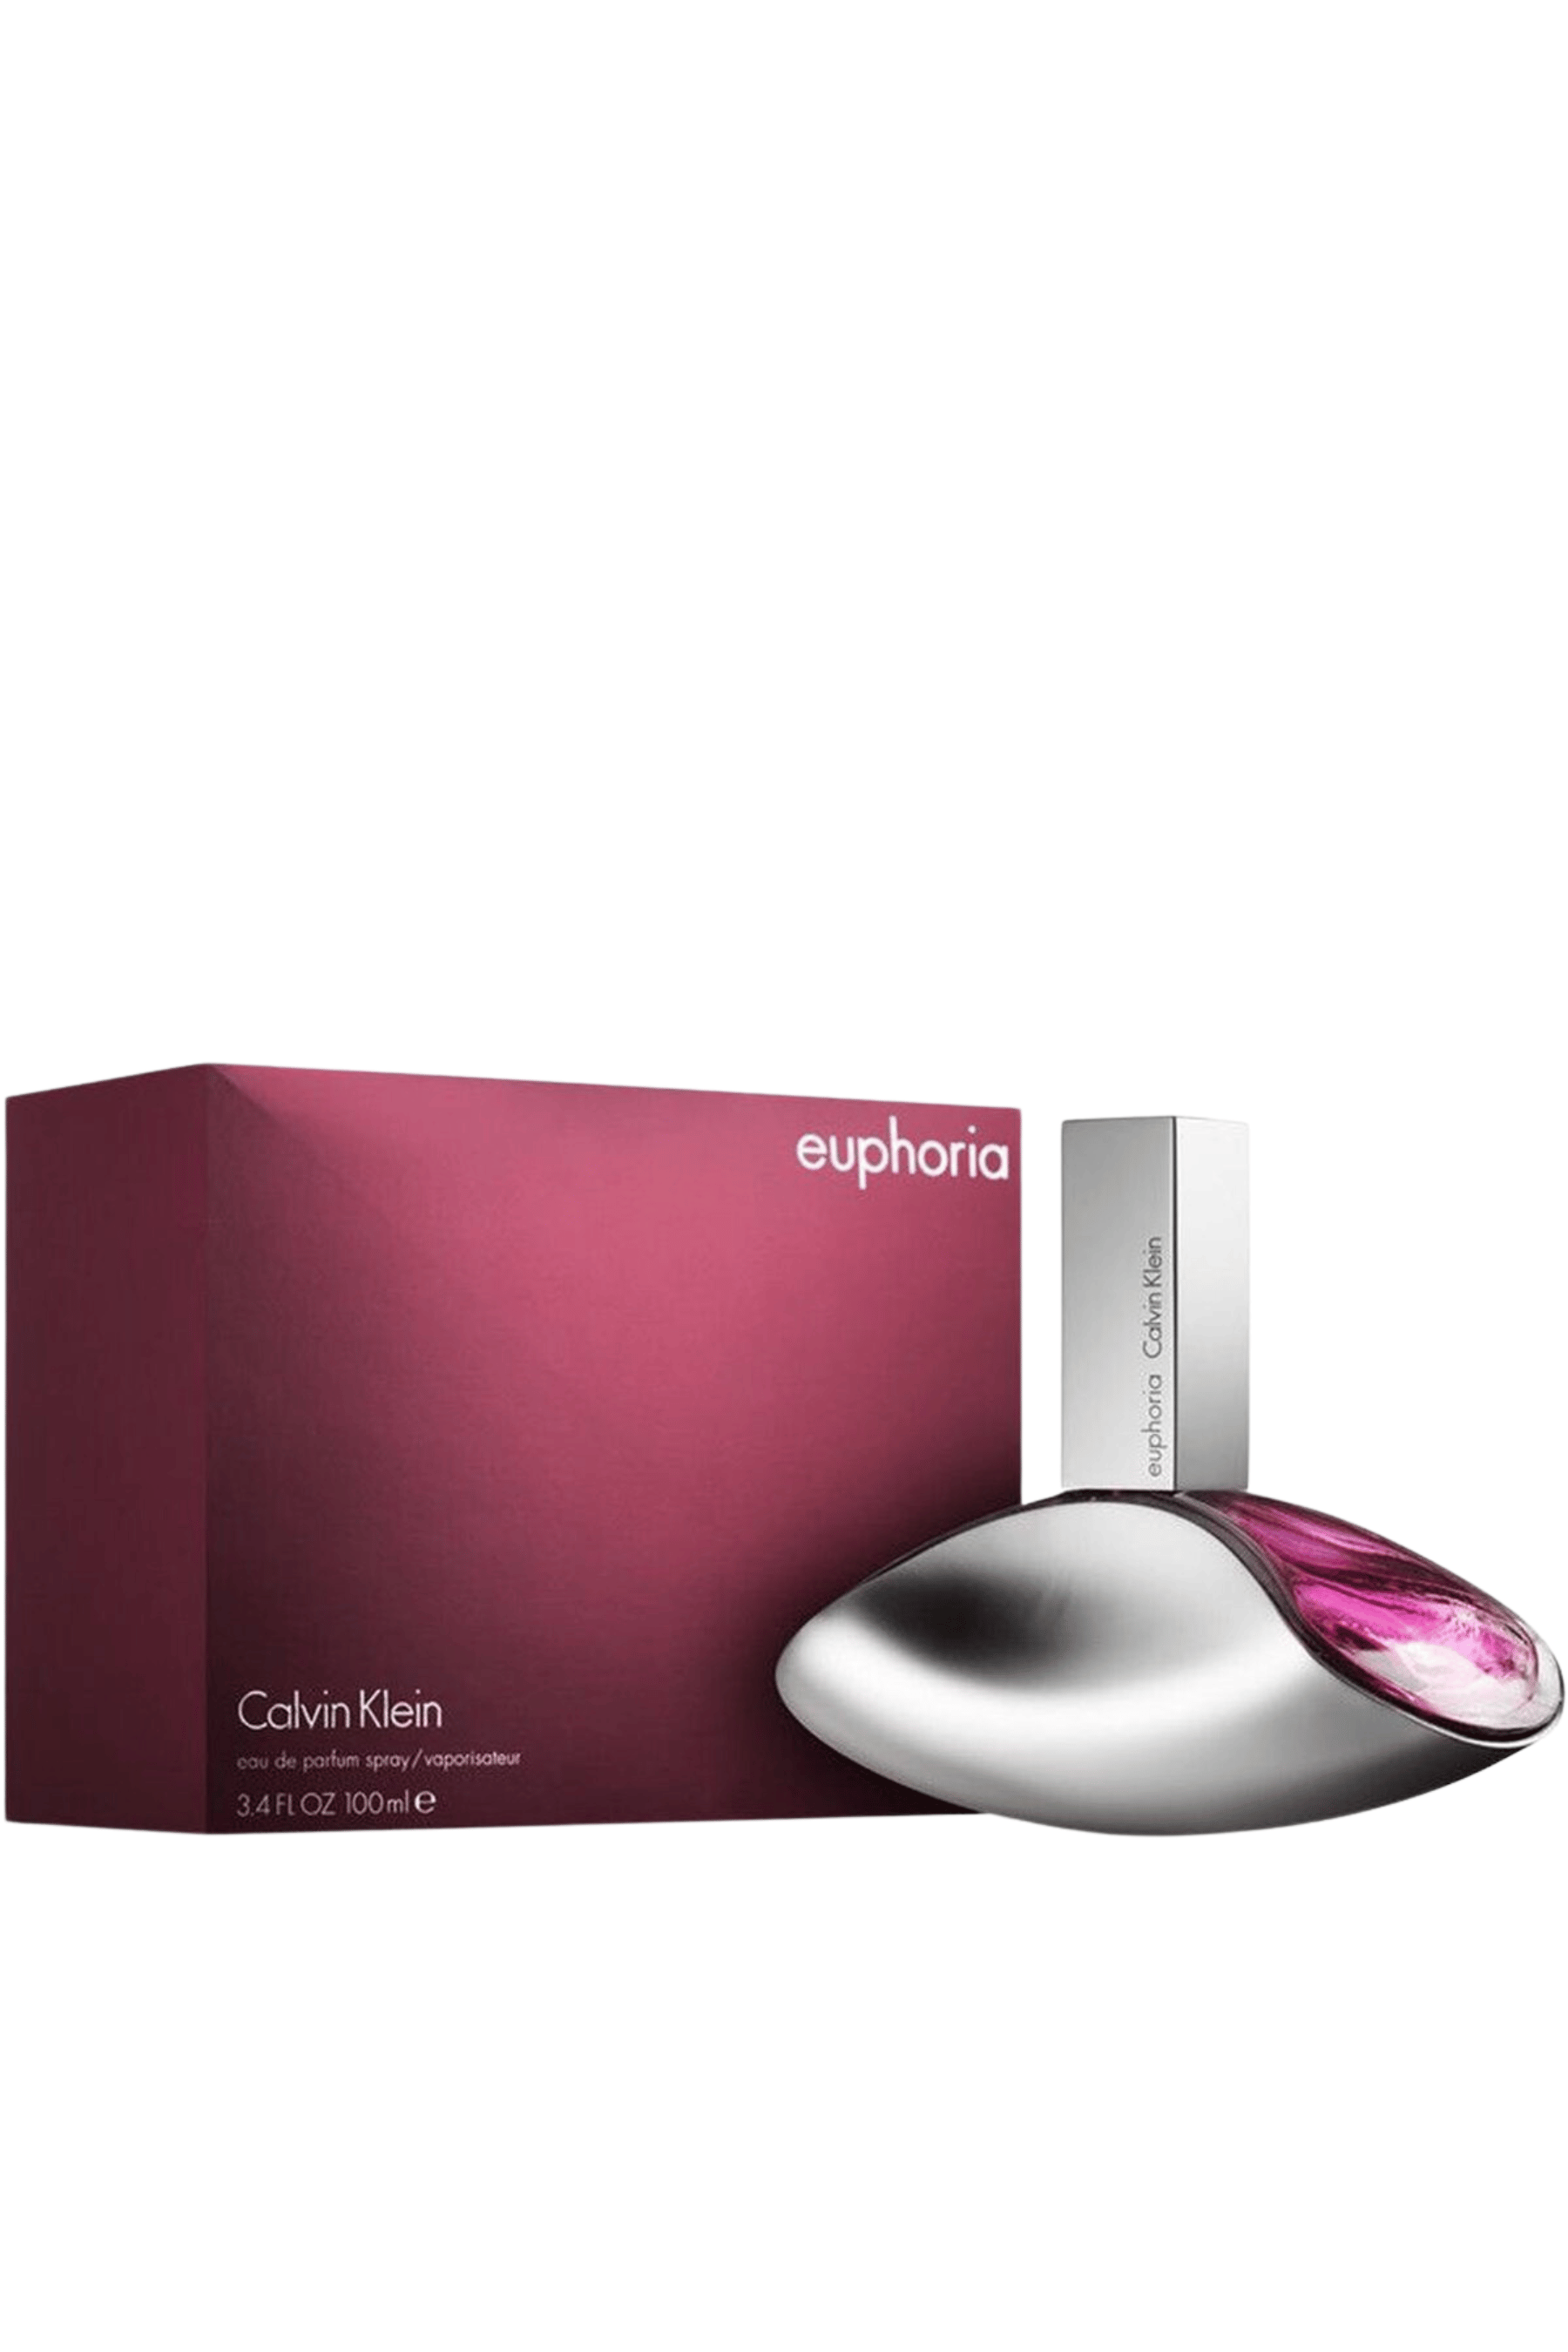 euphoria - Calvin Klein